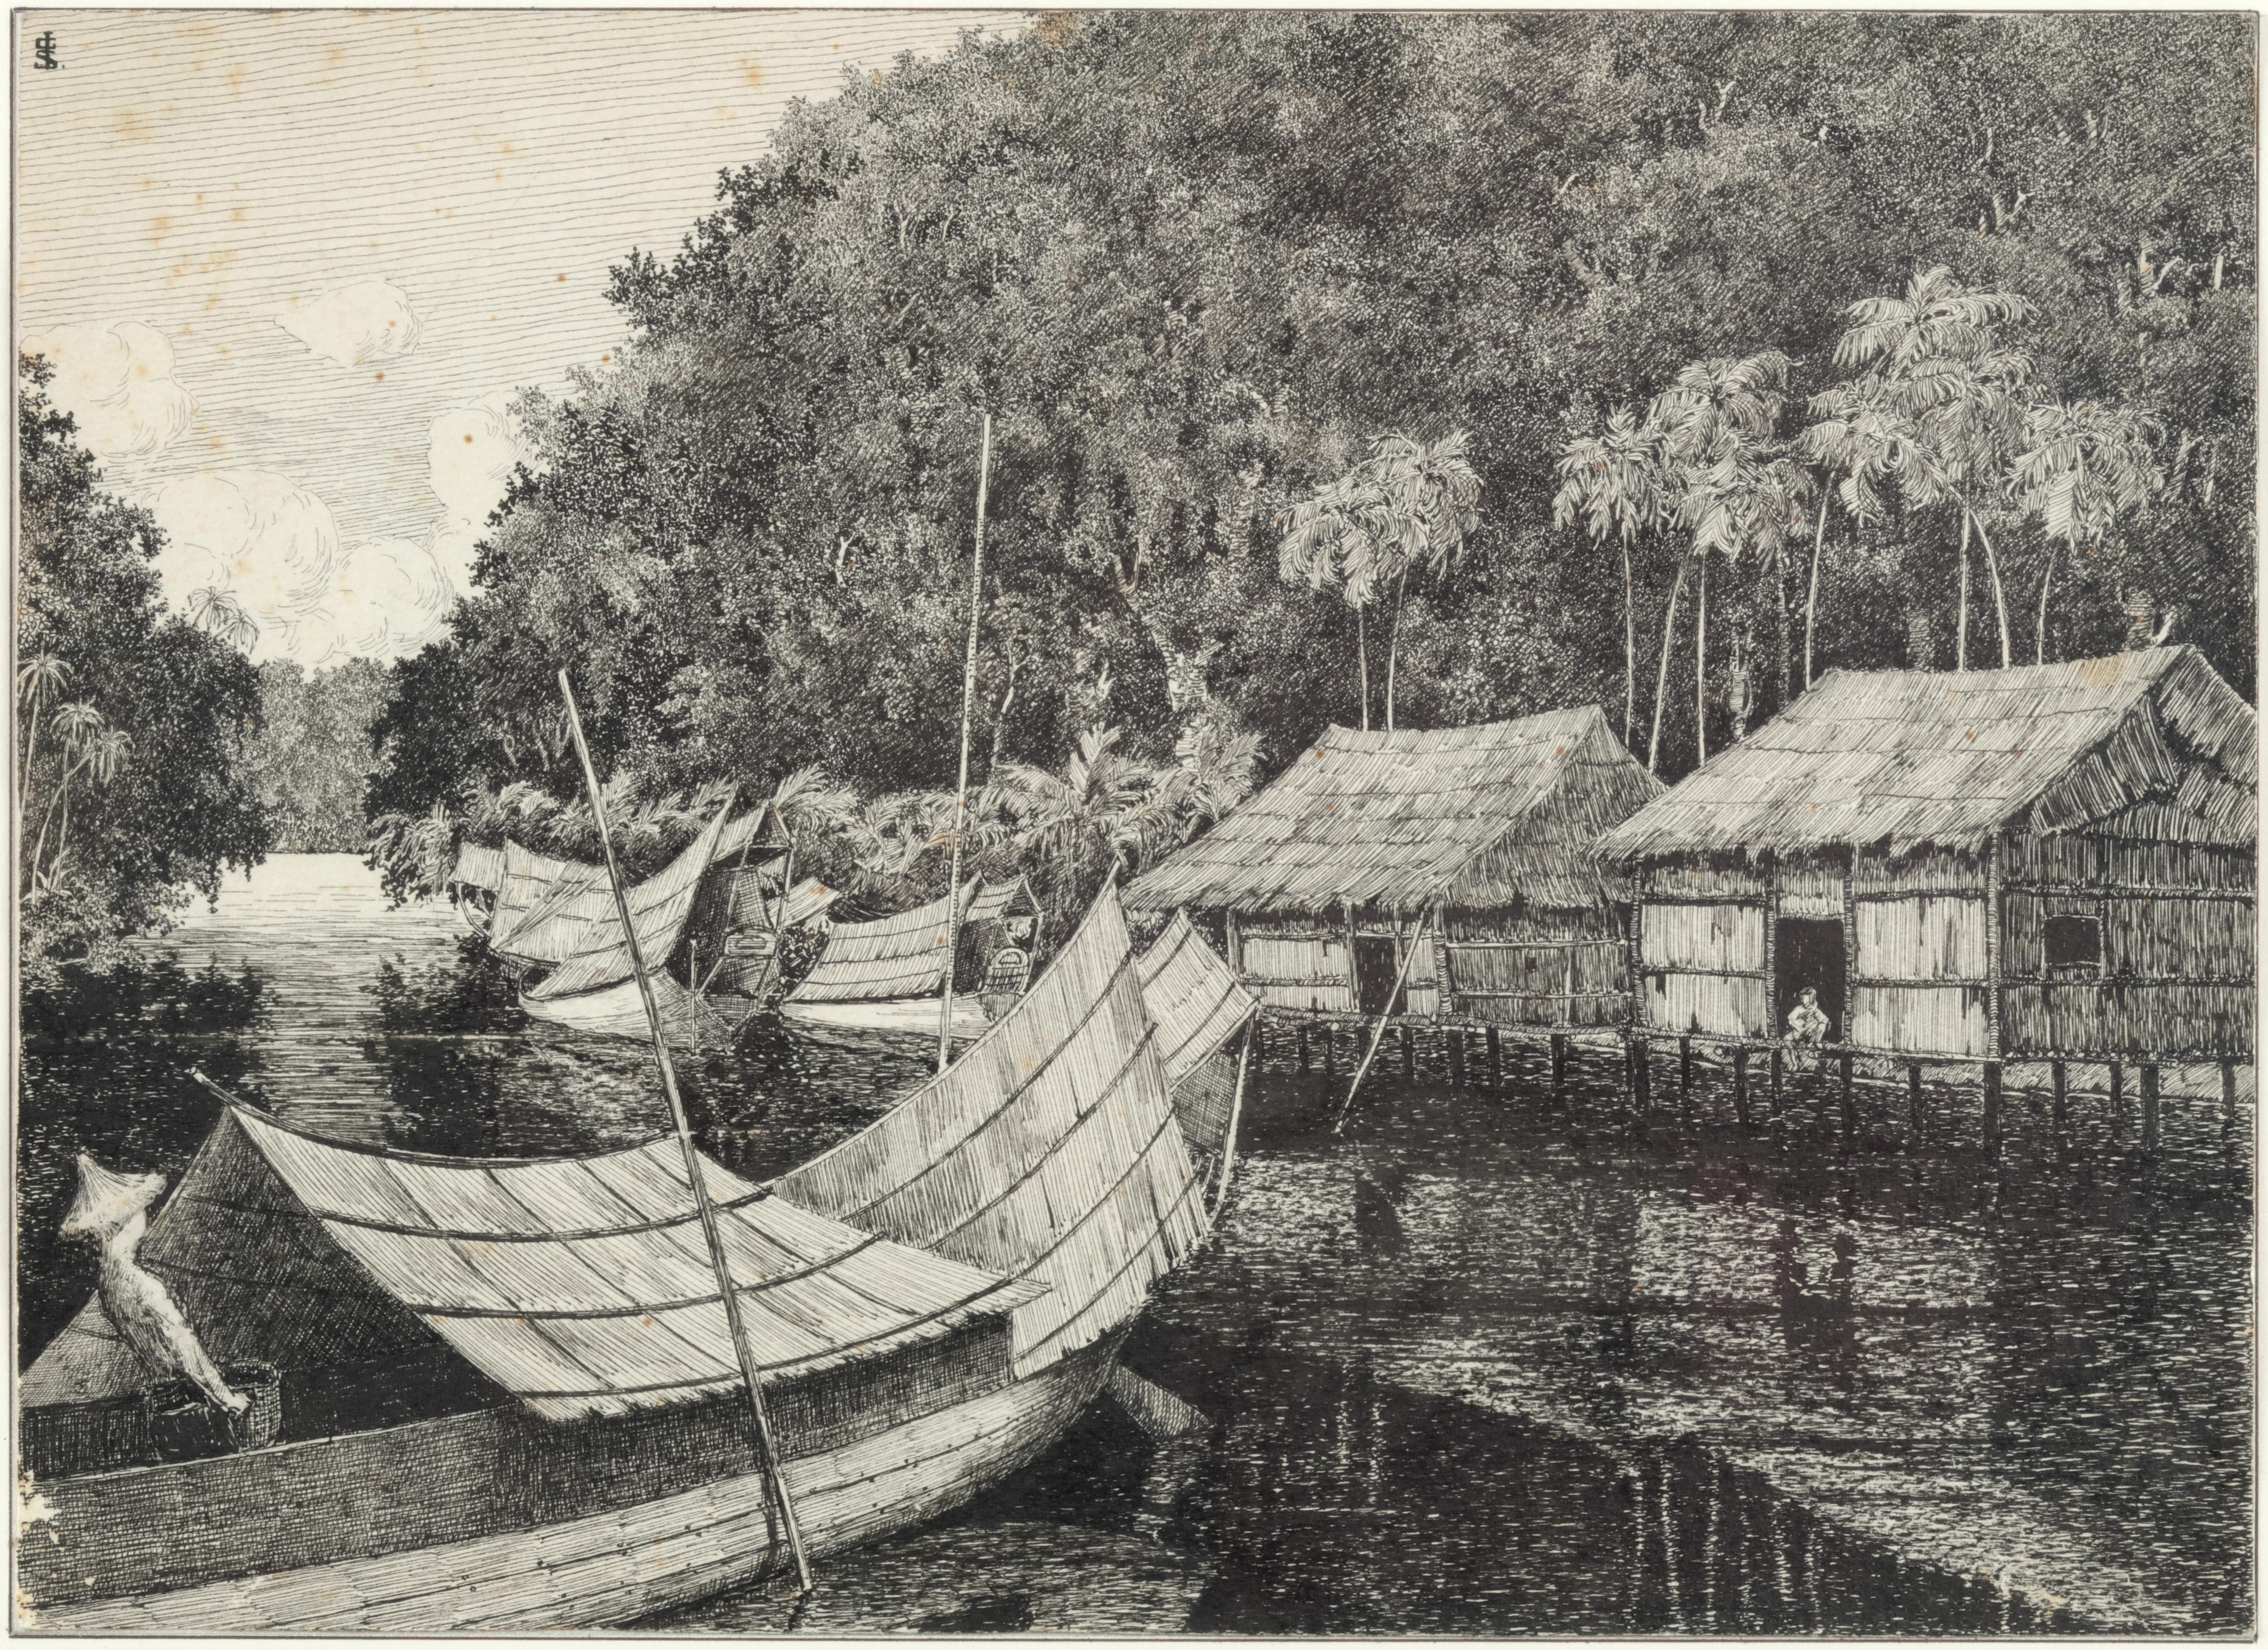 Collection de dessins coloniaux représentant l'Indonésie par J.G. Sinia 